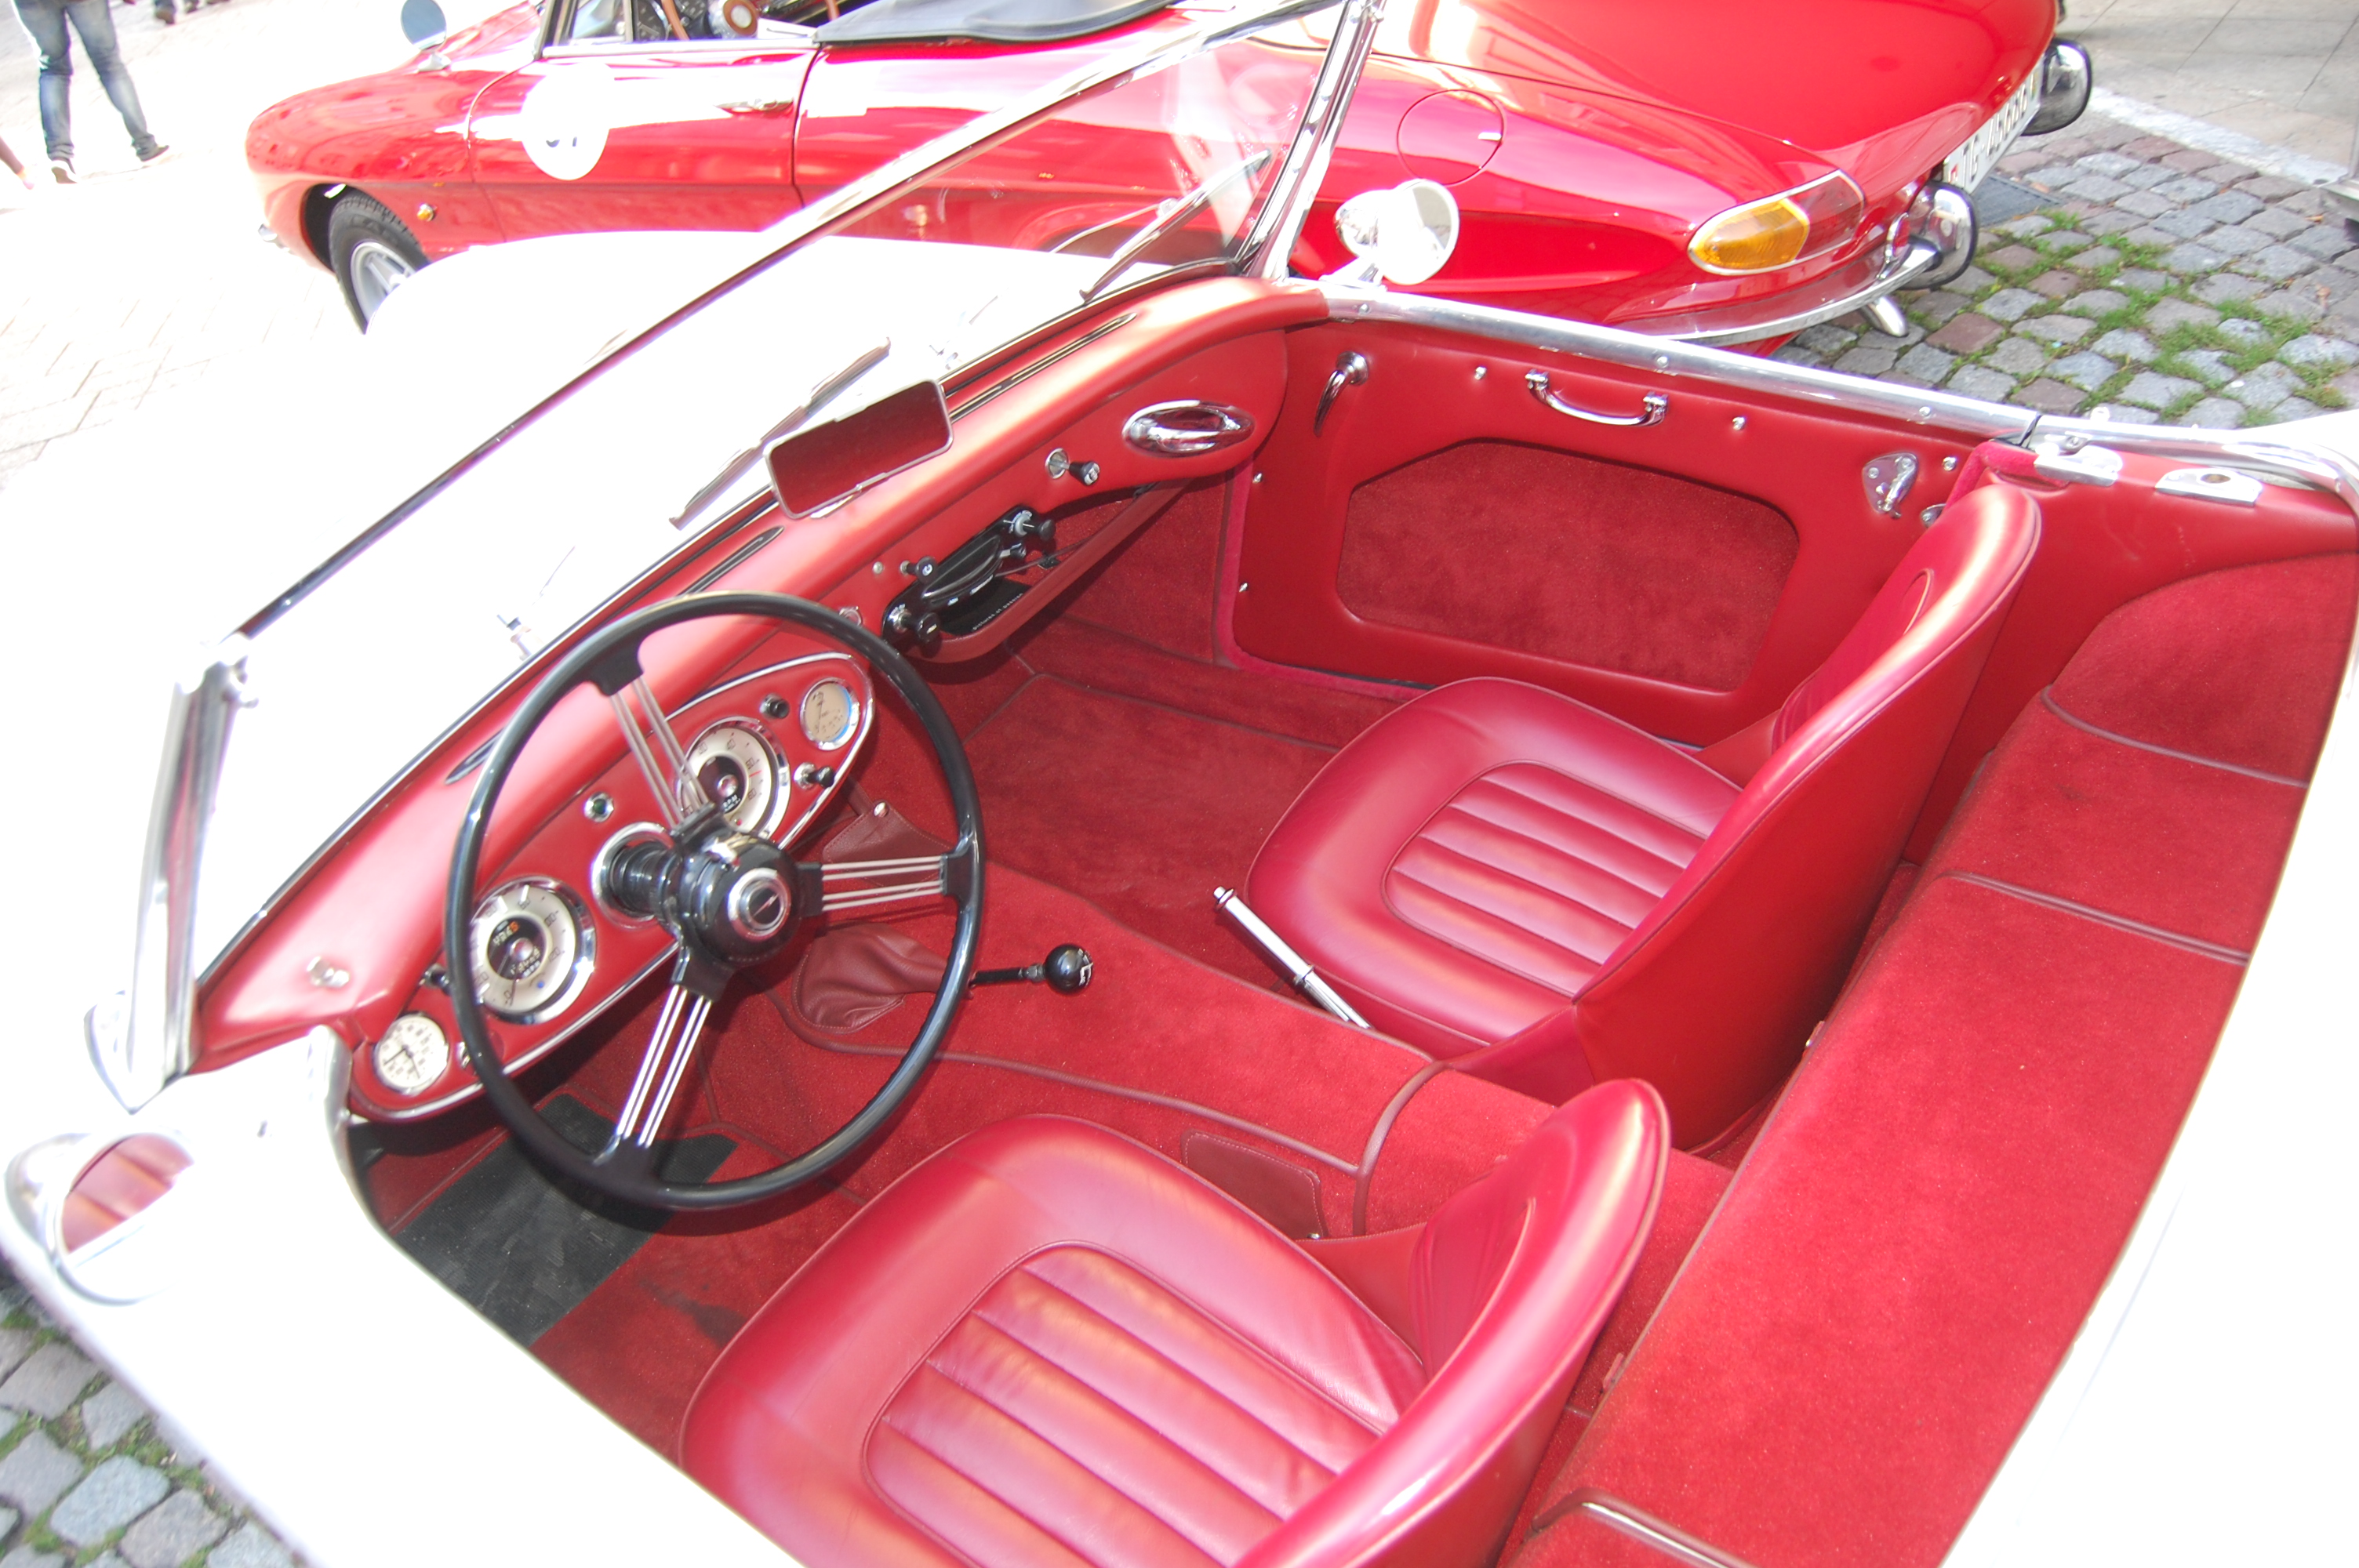 Austin-Healey 3000 Mk I 1959-1961 (1959 BN7), interior